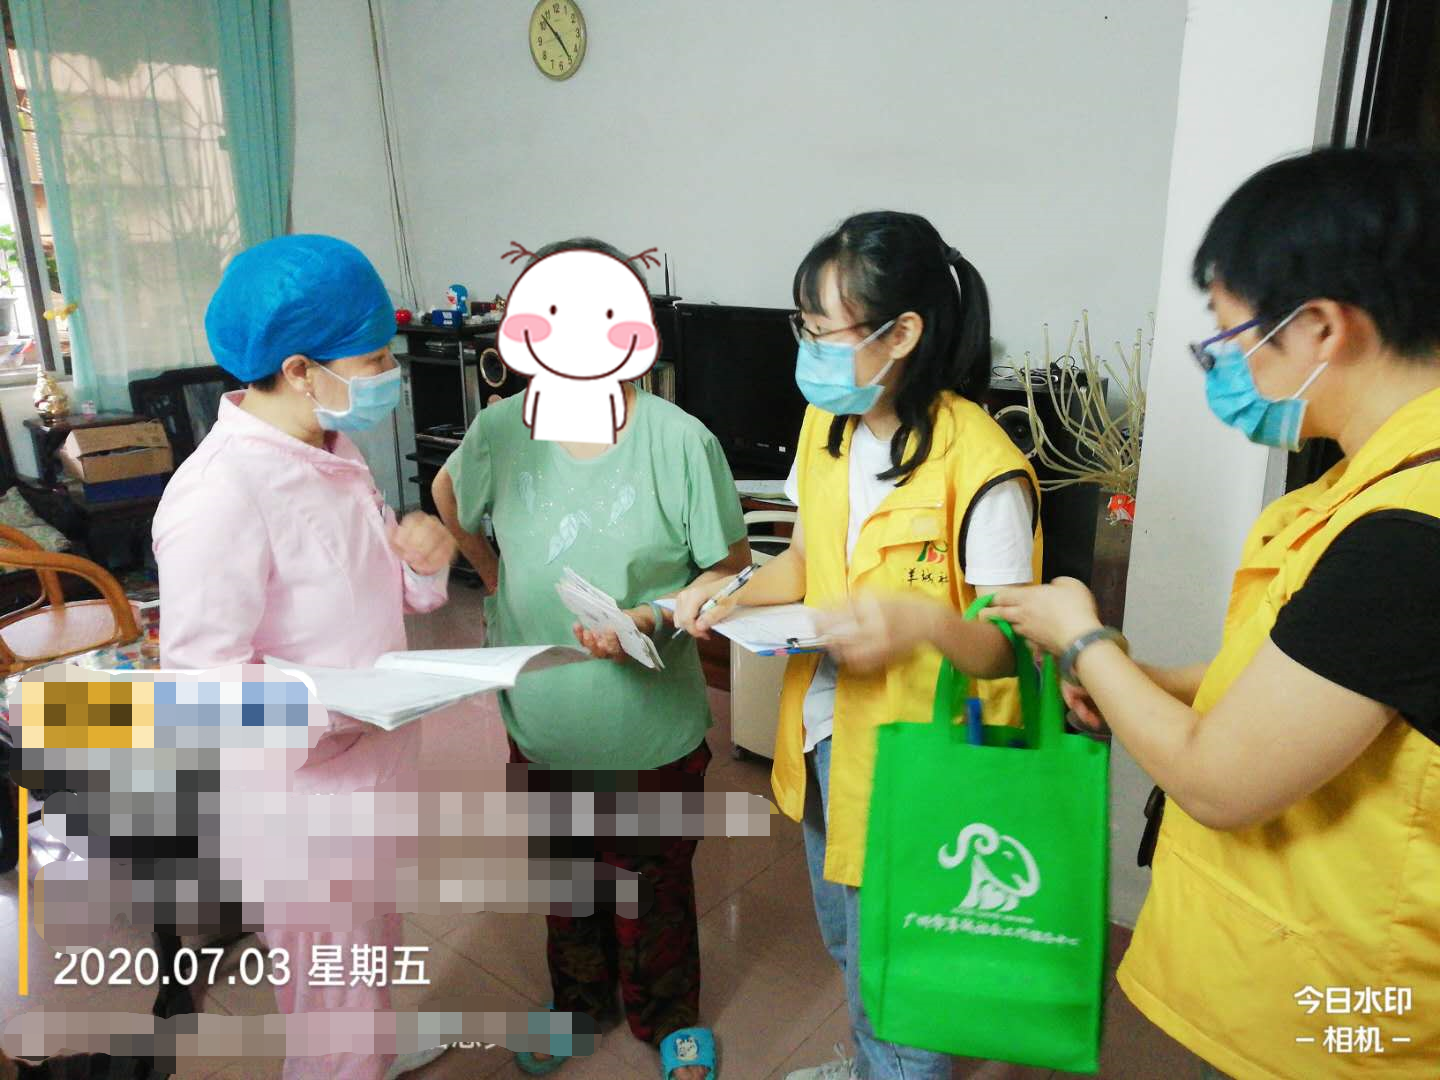 无论风雨，陪伴着你——“爱注入身·心”上门医疗服务 第七届广州市社会组织公益创投项目